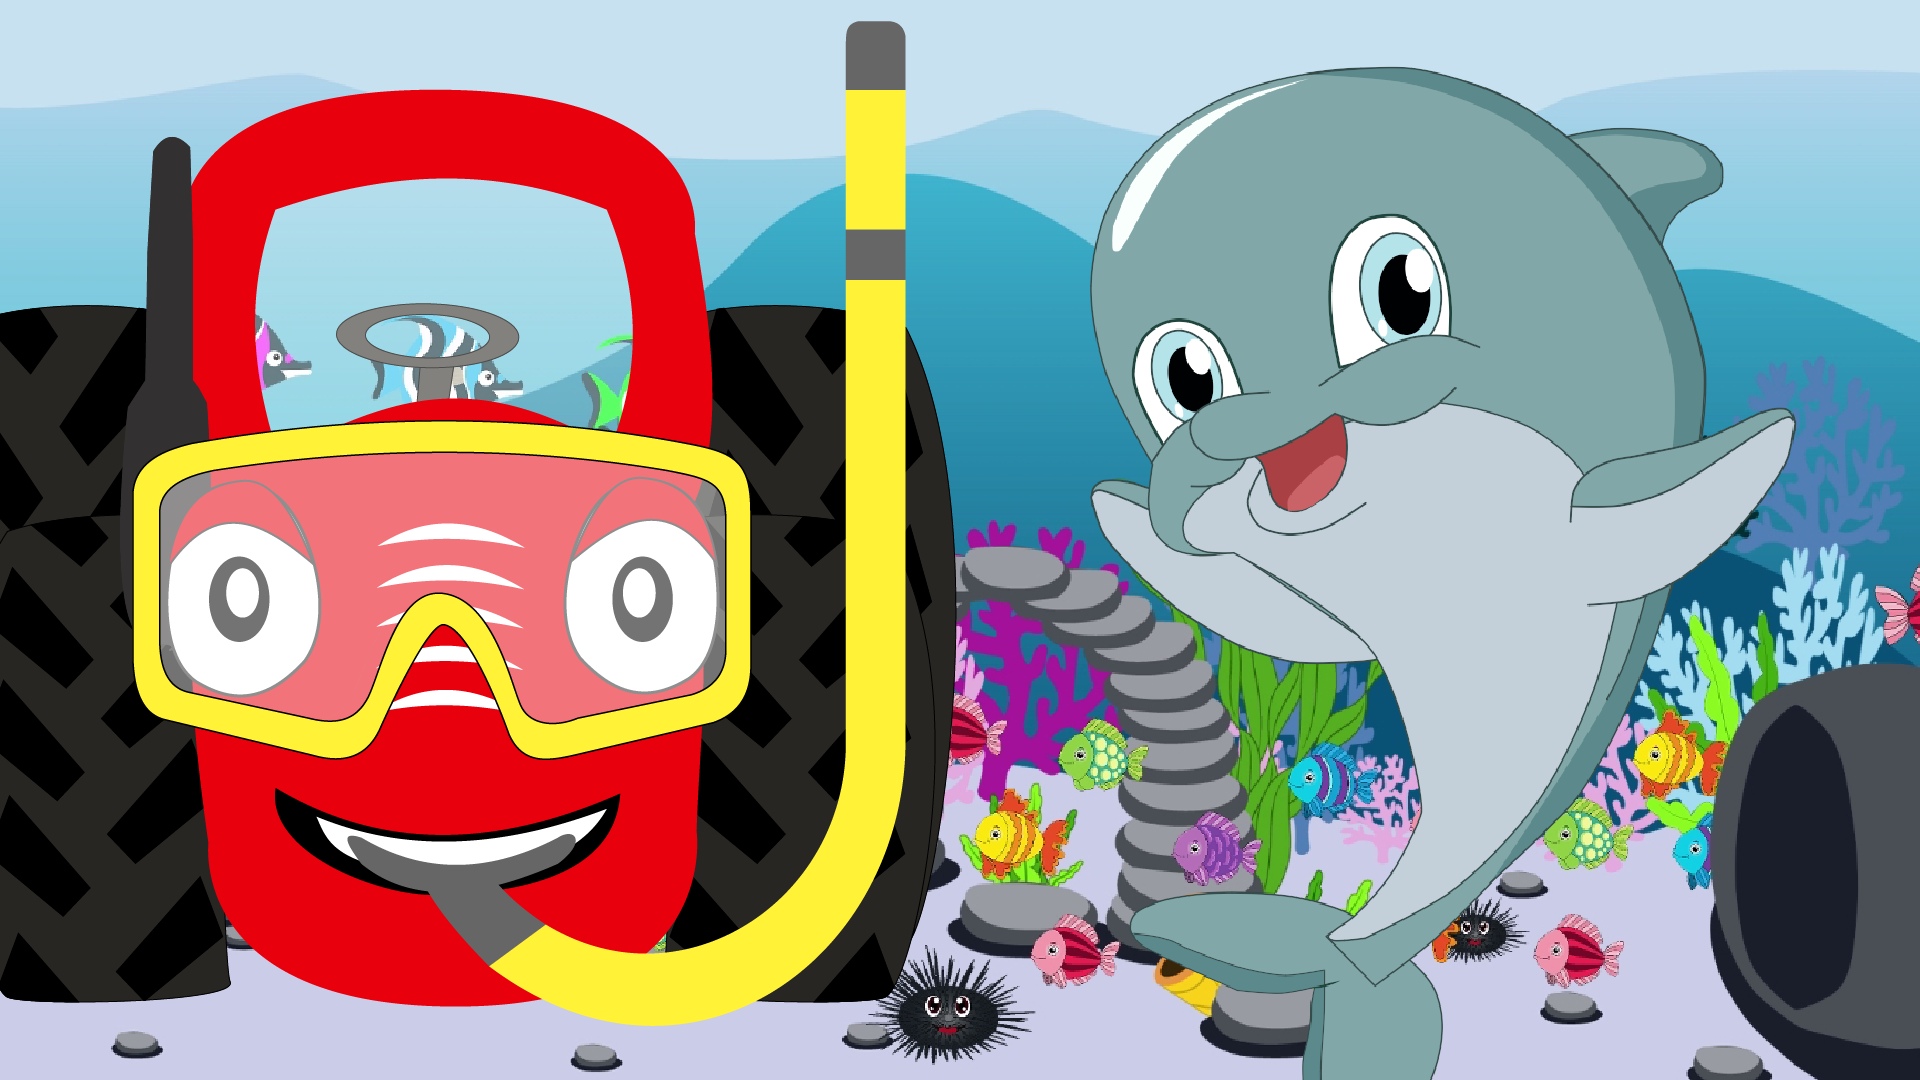 Перепевки на “Baby Shark” и разноцветный трактор. Екатерина и Алексей Гусаровы вместе с Алиной Кузьминой научились рисовать мультфильмы, чтобы сделать полезный youtube-канал для детей.